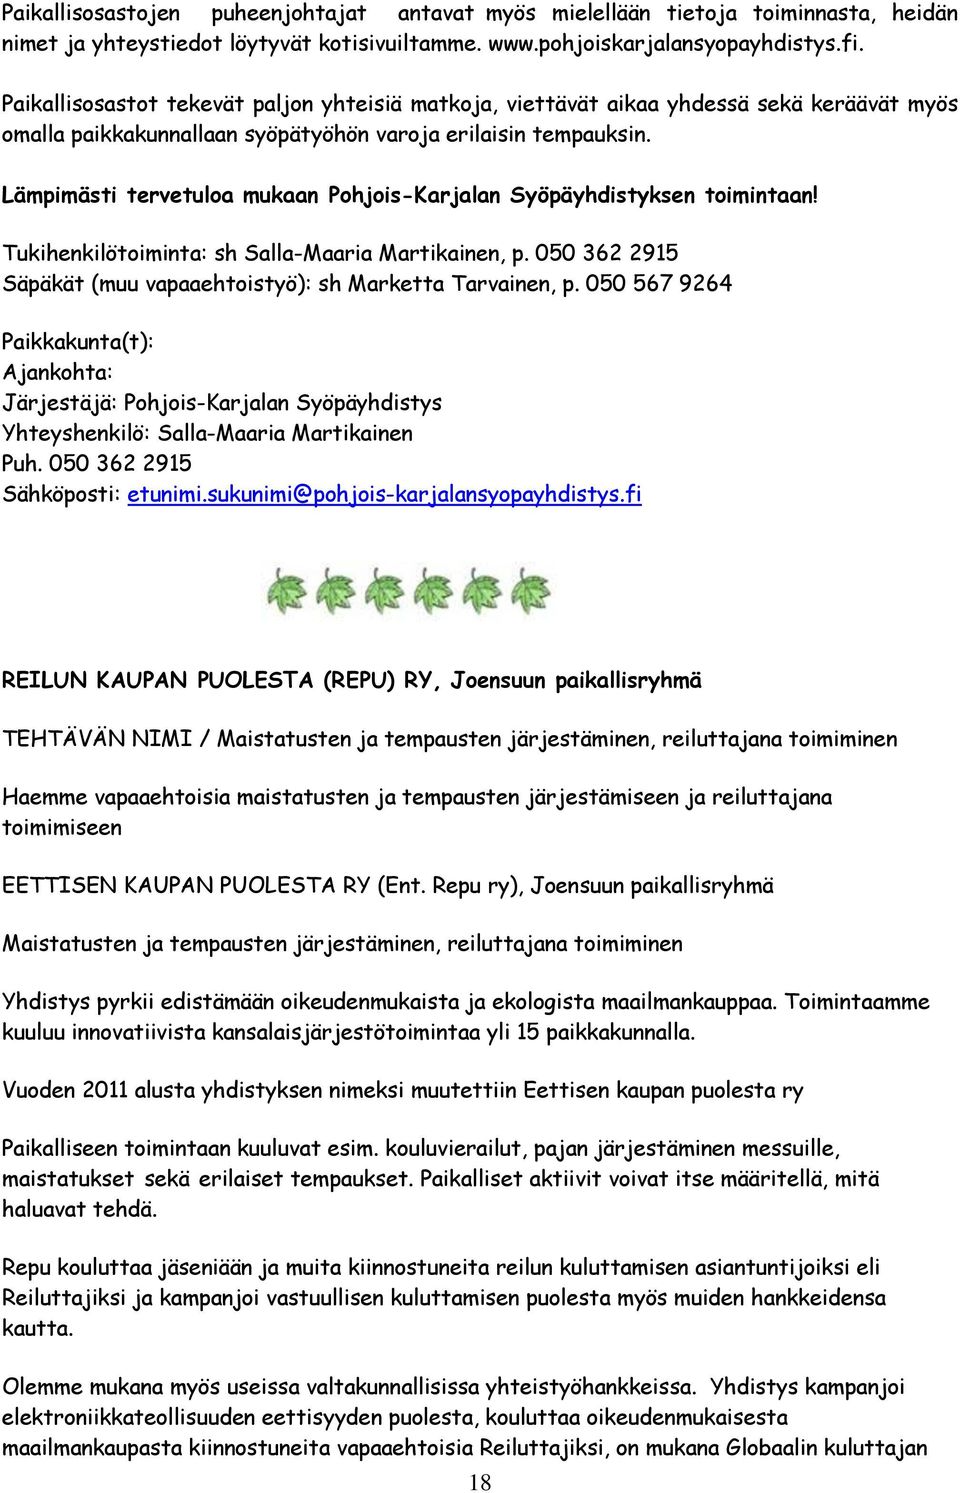 Lämpimästi tervetuloa mukaan Pohjois-Karjalan Syöpäyhdistyksen toimintaan! Tukihenkilötoiminta: sh Salla-Maaria Martikainen, p. 050 362 2915 Säpäkät (muu vapaaehtoistyö): sh Marketta Tarvainen, p.